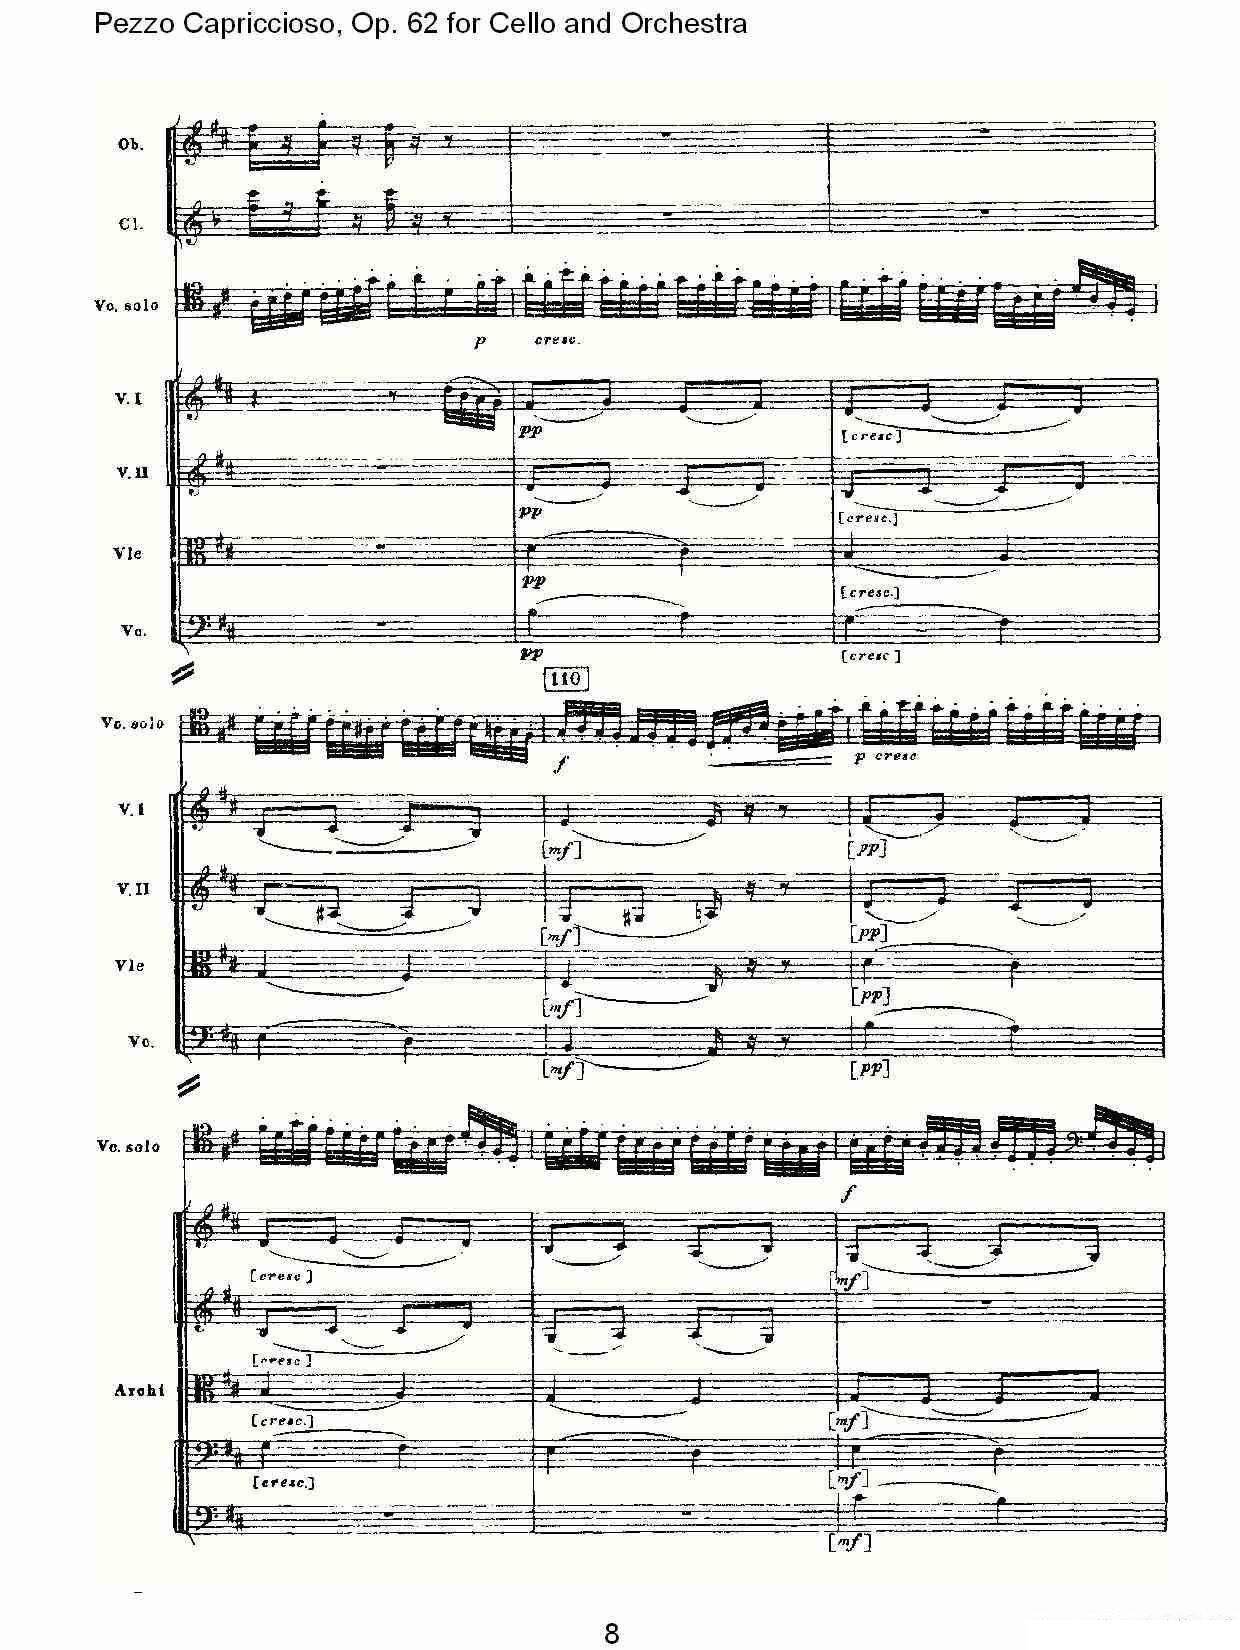 彼得·伊利奇·柴可夫斯基《Pezzo Capriccioso, Op.62》提琴谱（第8页）